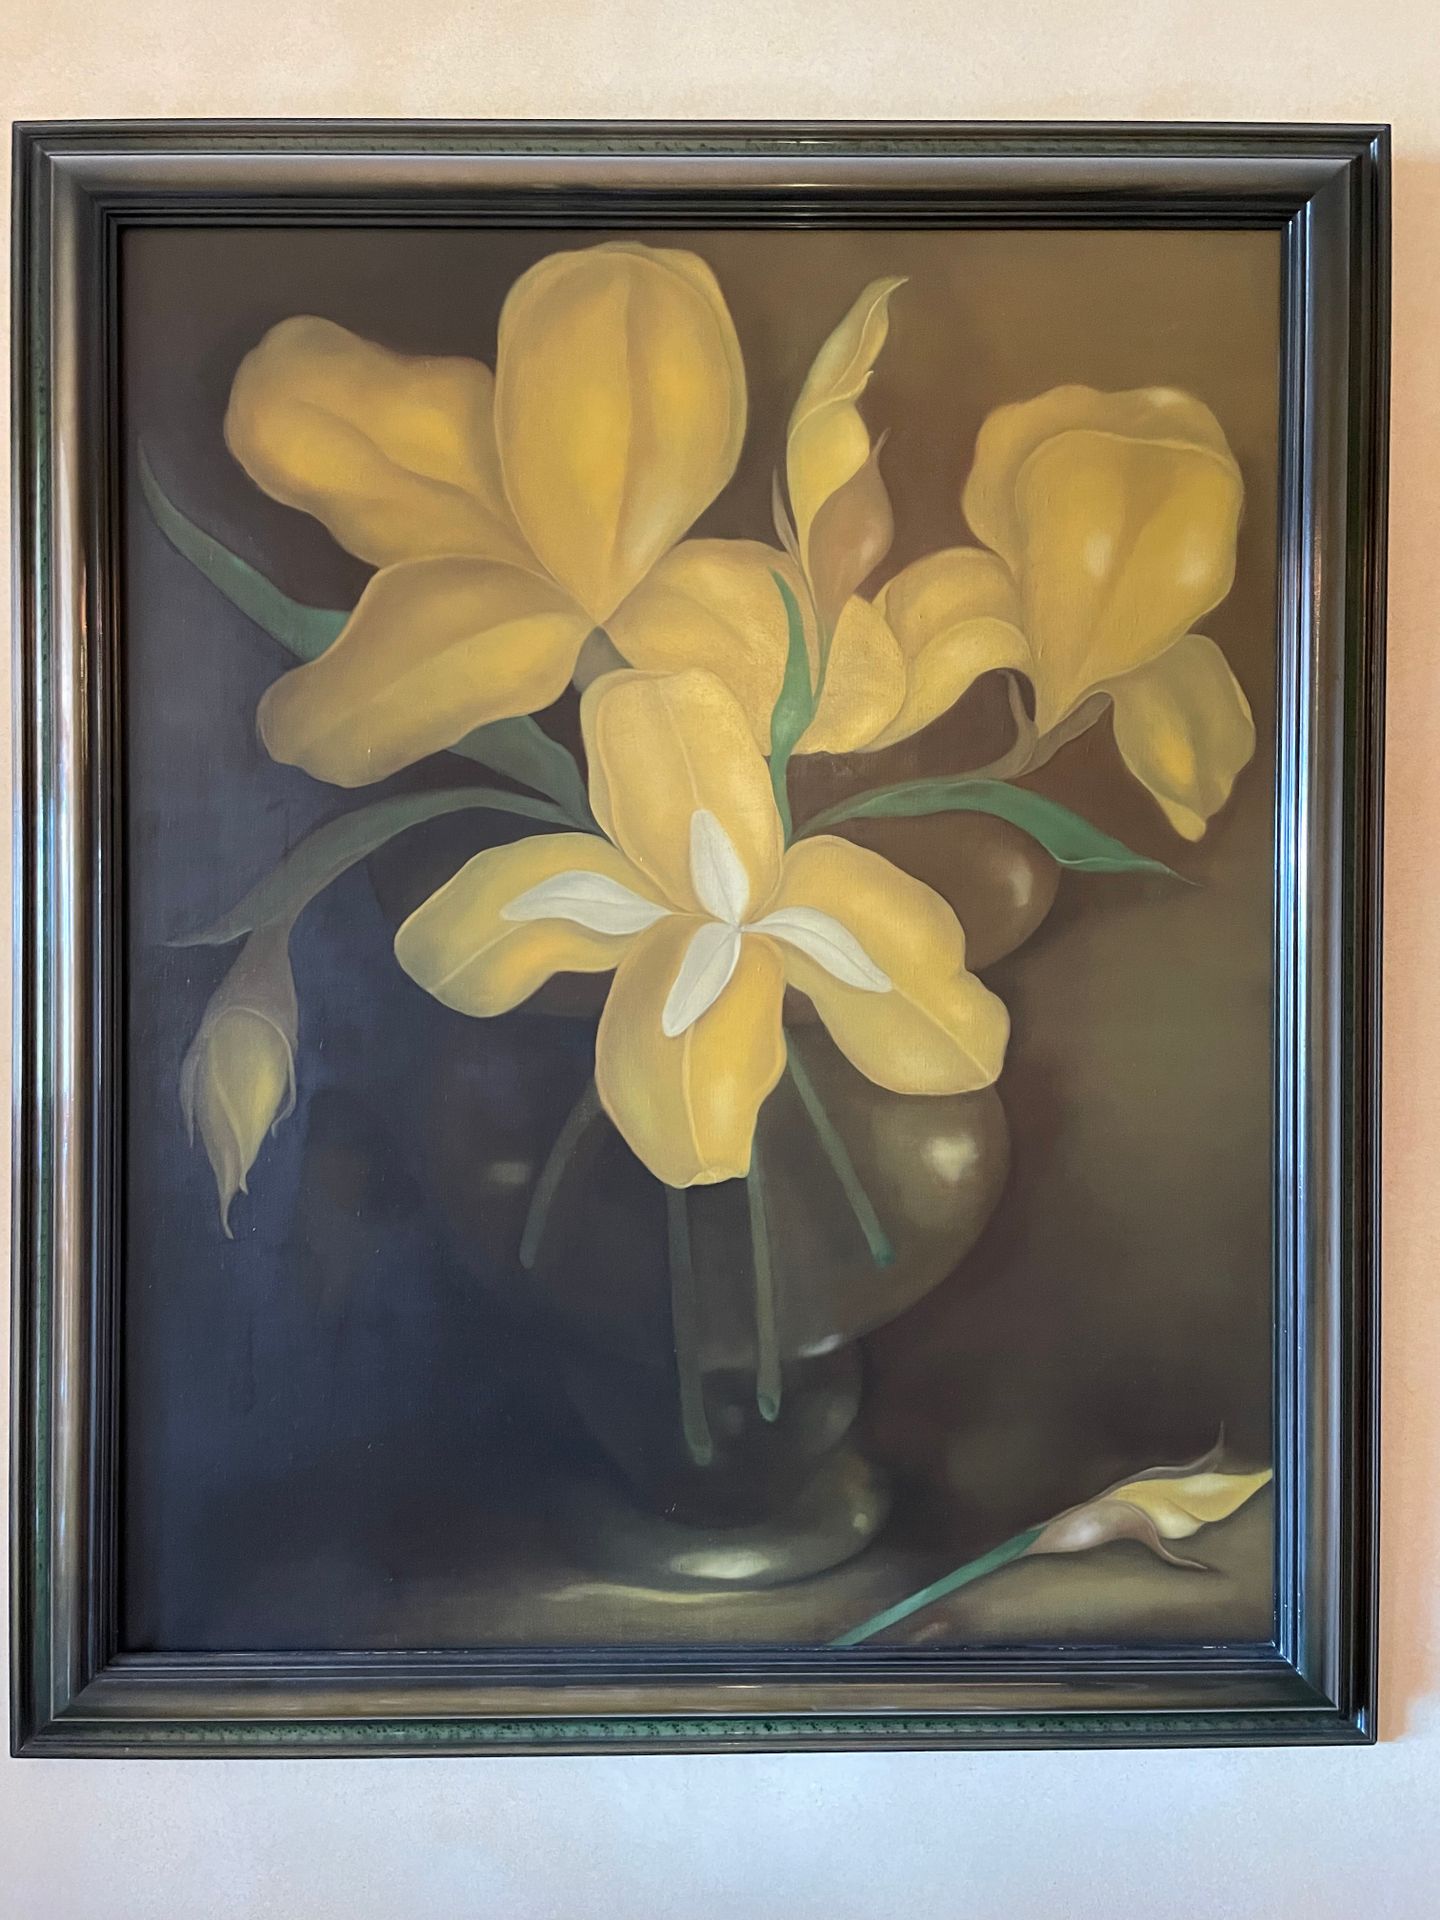 Ecole Moderne Vases d'iris jaunes
Huile sur toile
108x88 cm.